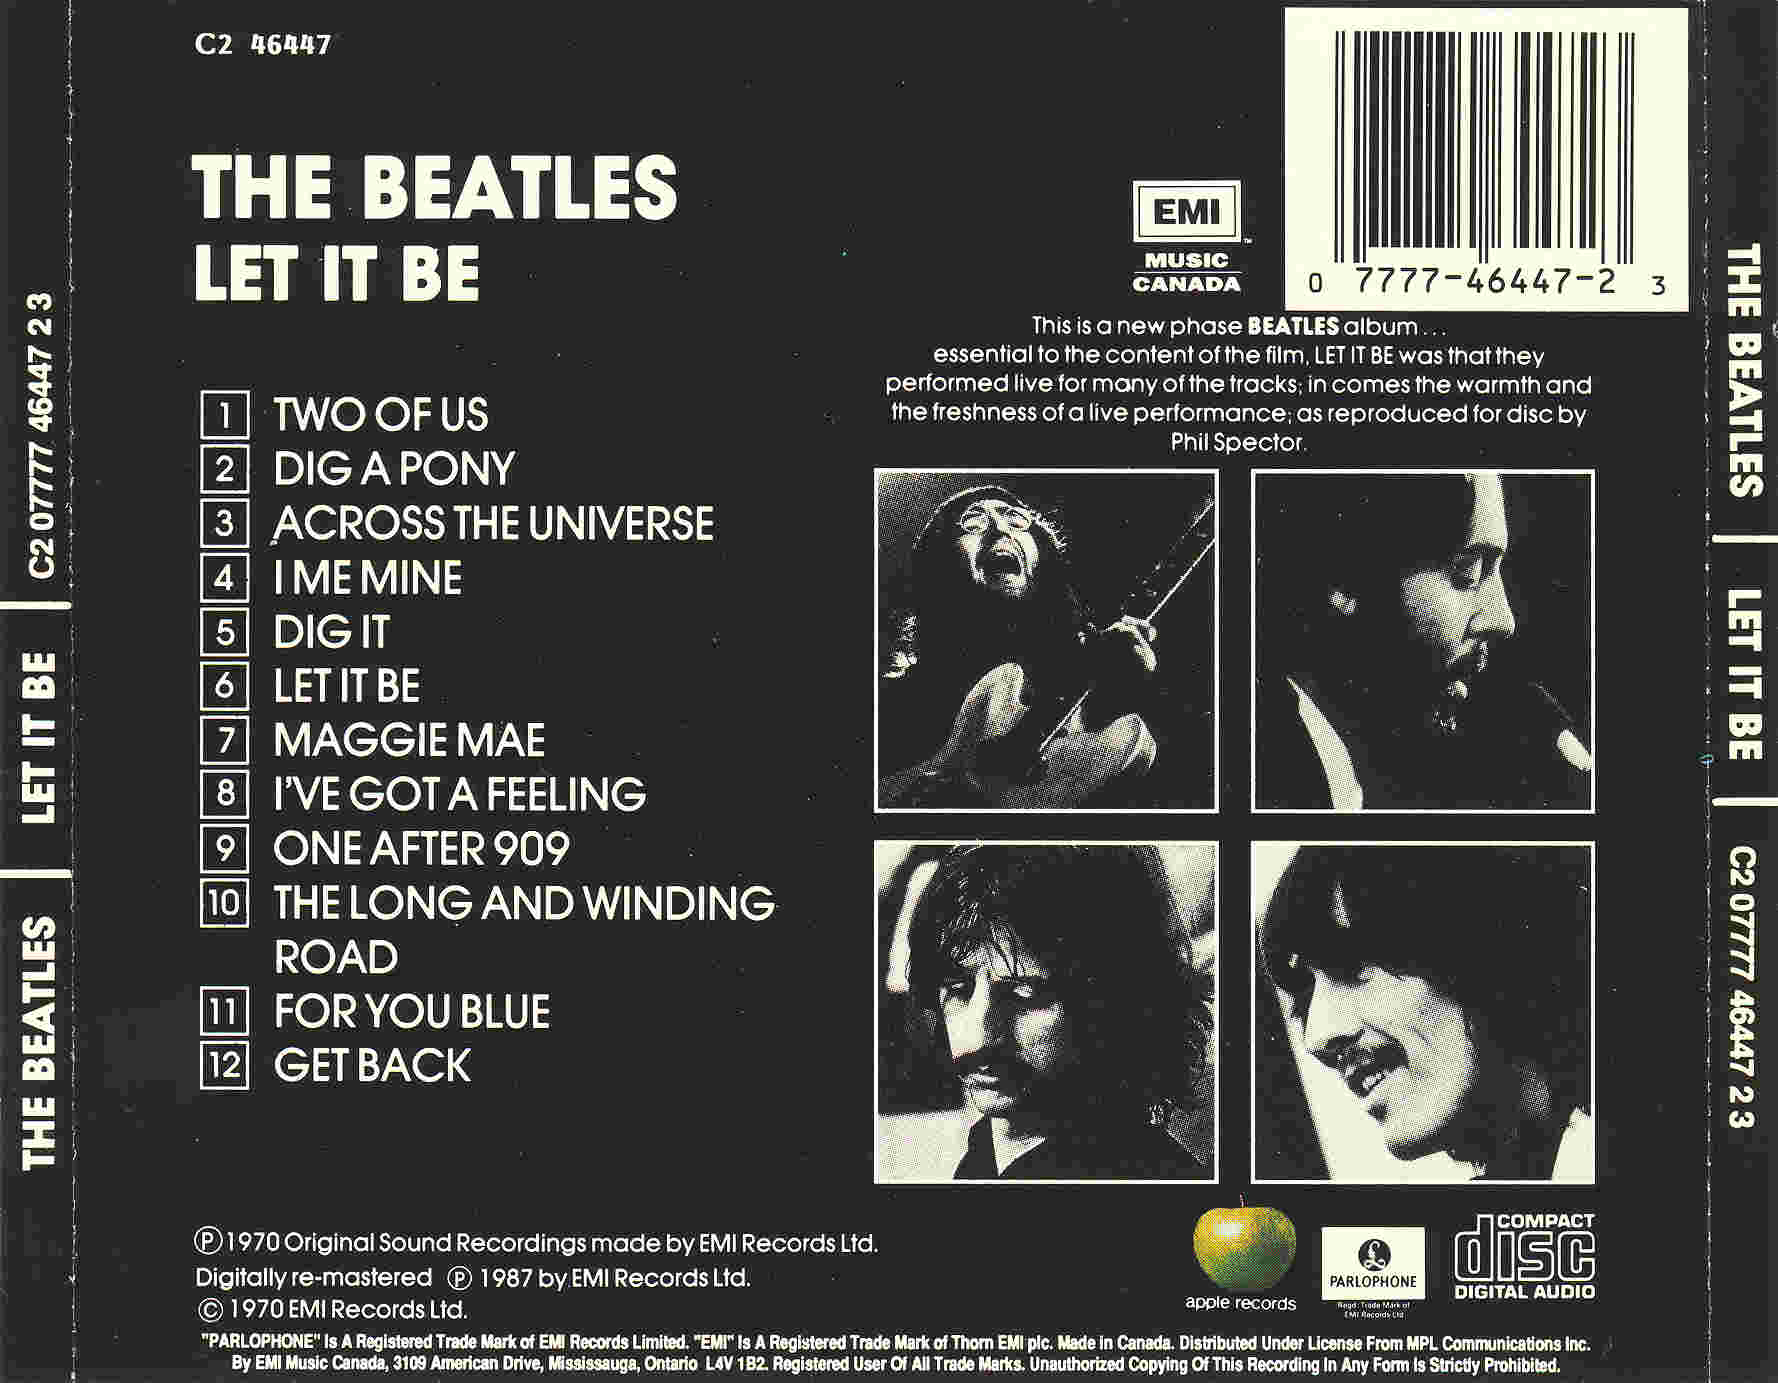 Лет ит би слушать. The Beatles Let it be 1970 обложка. Обложка альбома Битлз лет ИТ би. The Beatles "Let it be, CD". The Beatles Let it be обложка альбома.